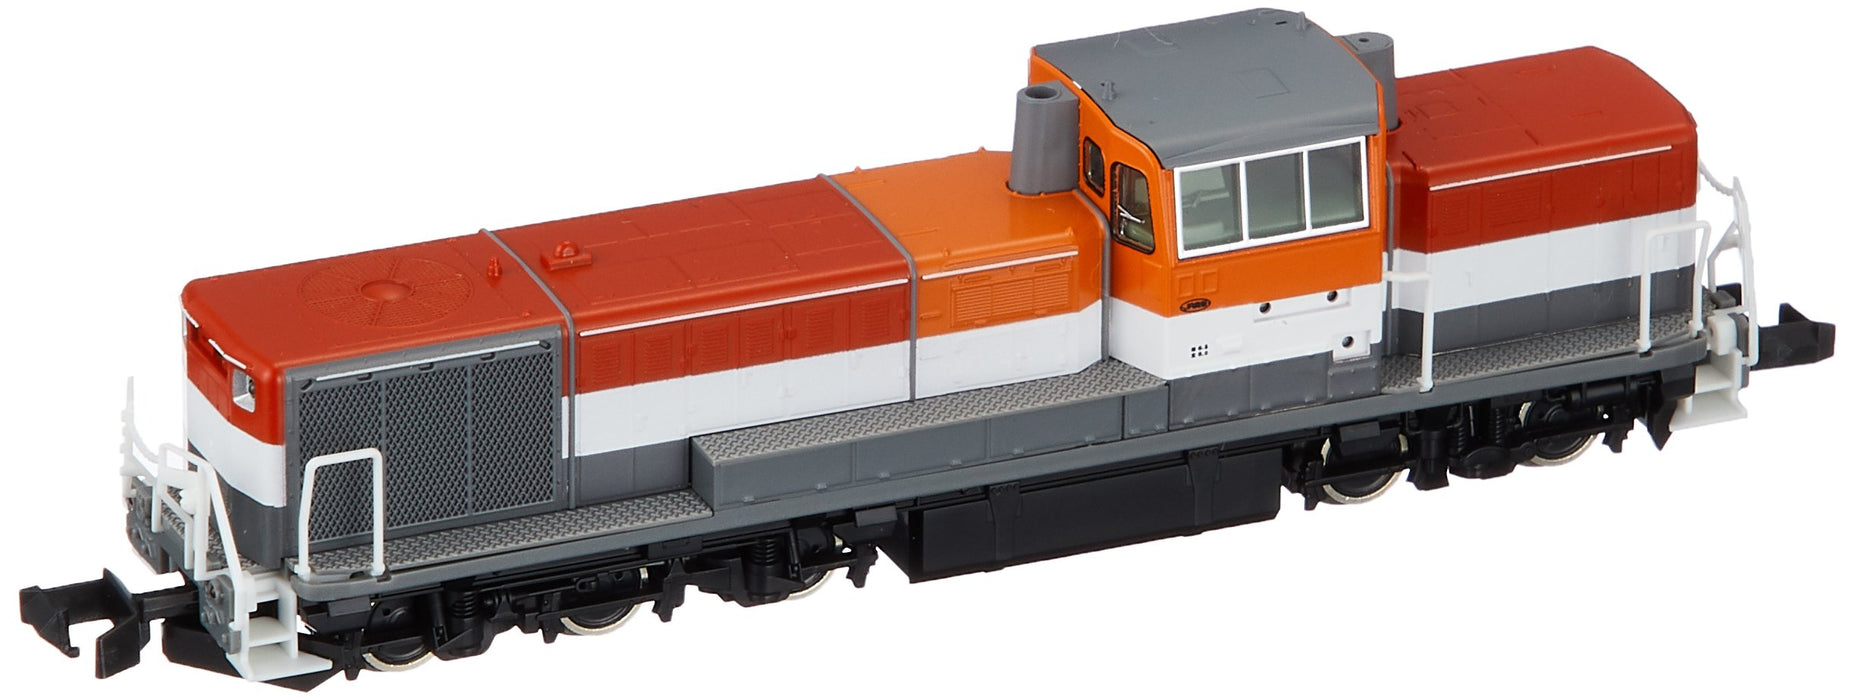 Tomytec Tomix N Gauge 2232 De10 1000 Jr Cargo Spécification Modèle Train